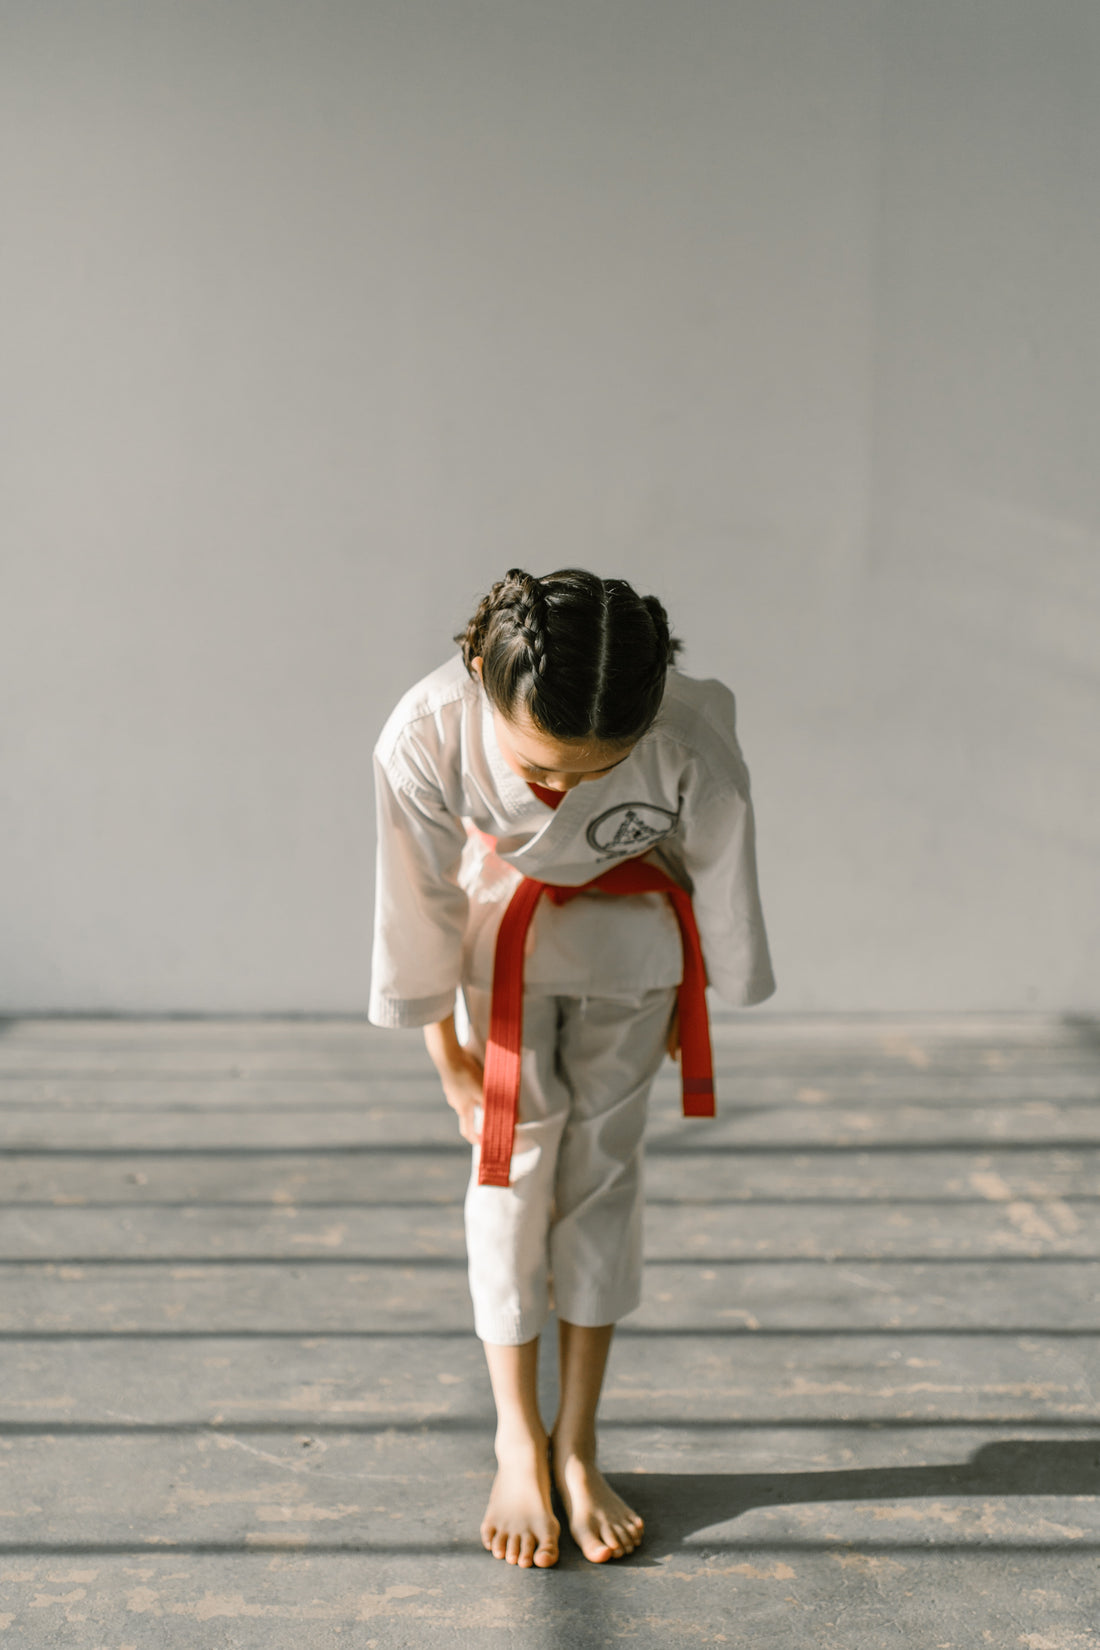 Origin of Taekwondo 